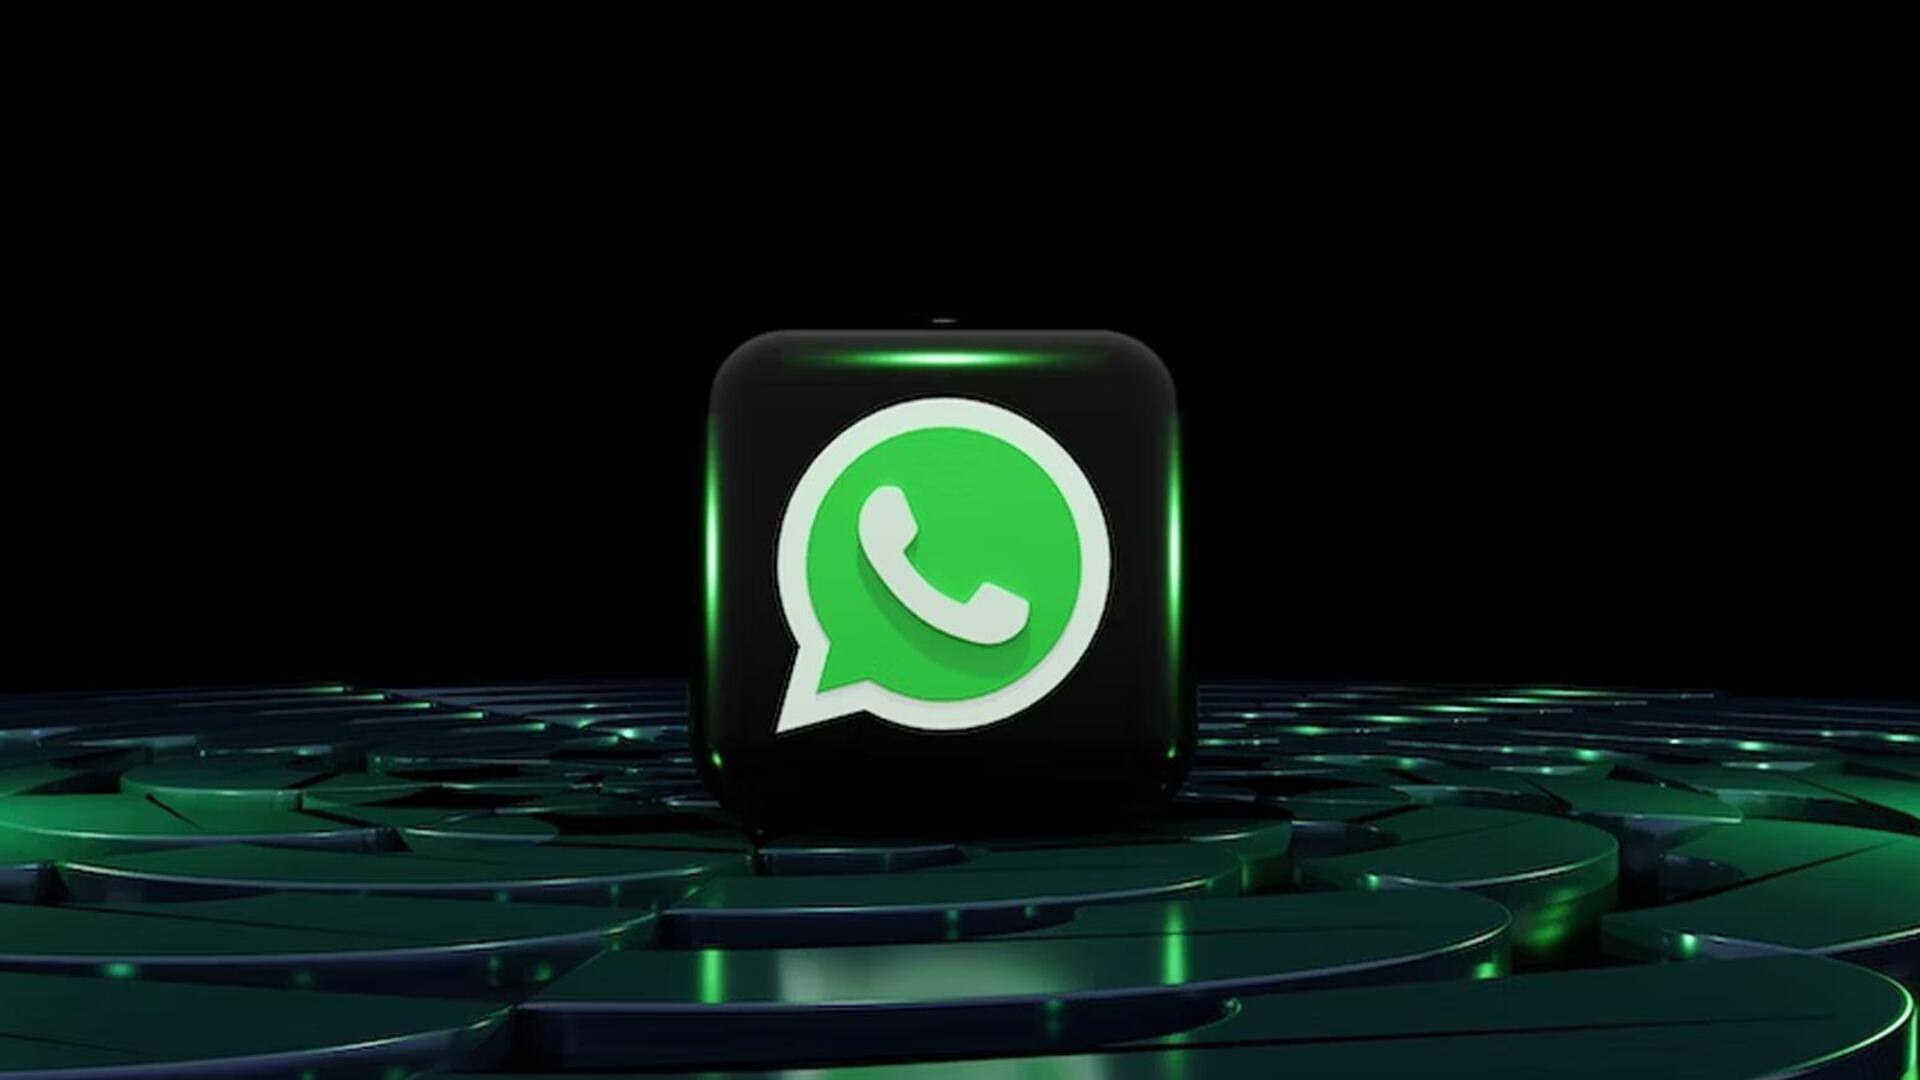 व्हाट्सऐप का एडिट मैसेज फीचर अब यूजर्स के लिए है उपलब्ध, जानें कैसे करें उपयोग